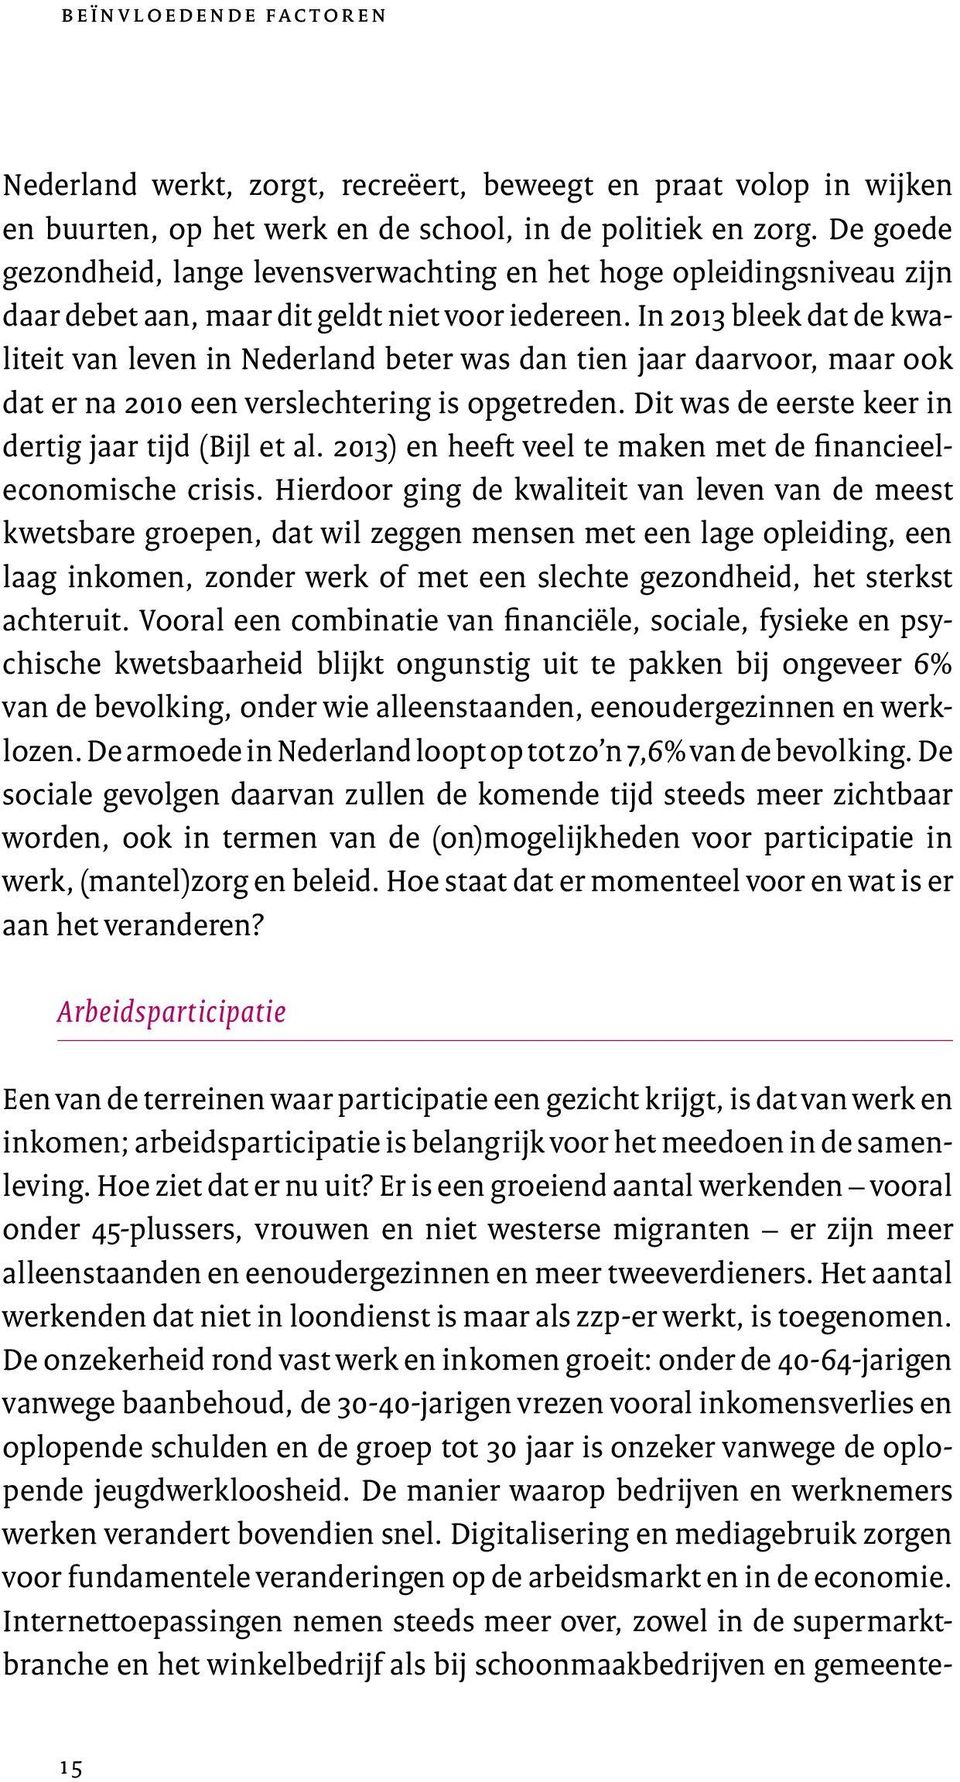 In 2013 bleek dat de kwaliteit van leven in Nederland beter was dan tien jaar daarvoor, maar ook dat er na 2010 een verslechtering is opgetreden.